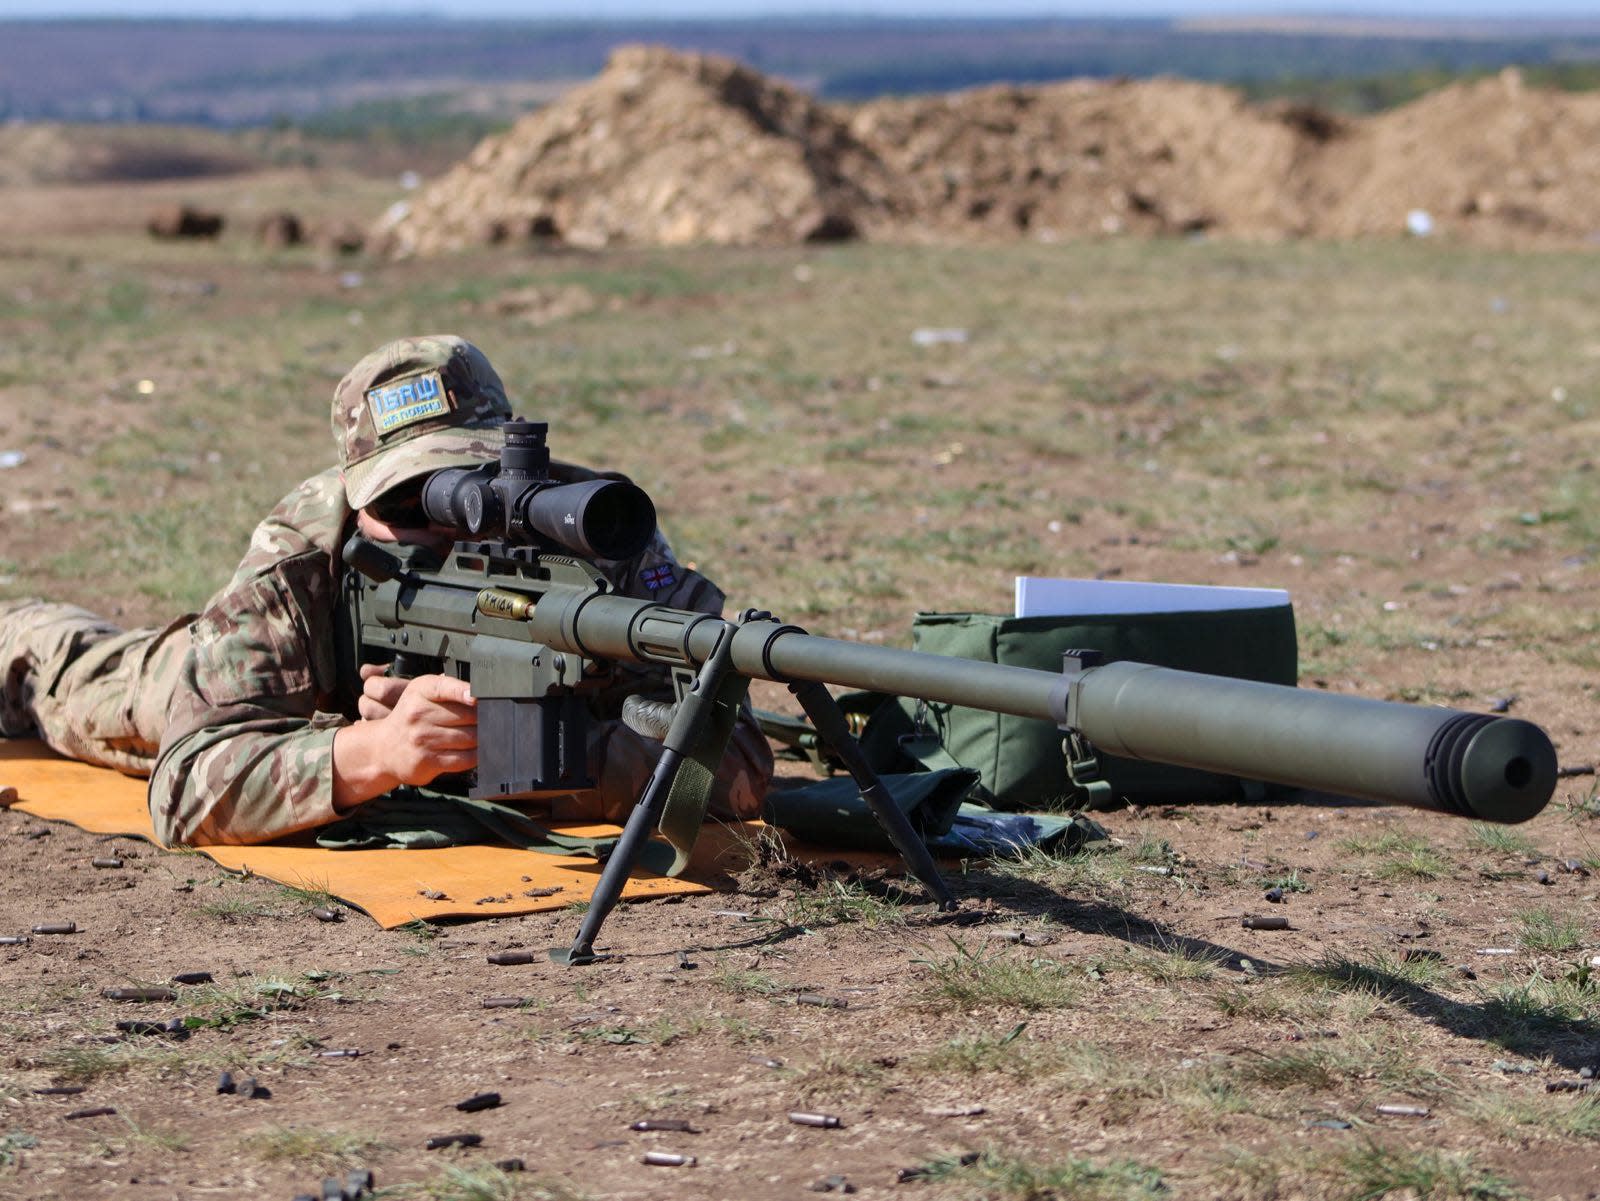 Tay bắn tỉa lành nghề nhất của Ukraine cứ 5 phút hạ gục một lính Nga - Ảnh 1.